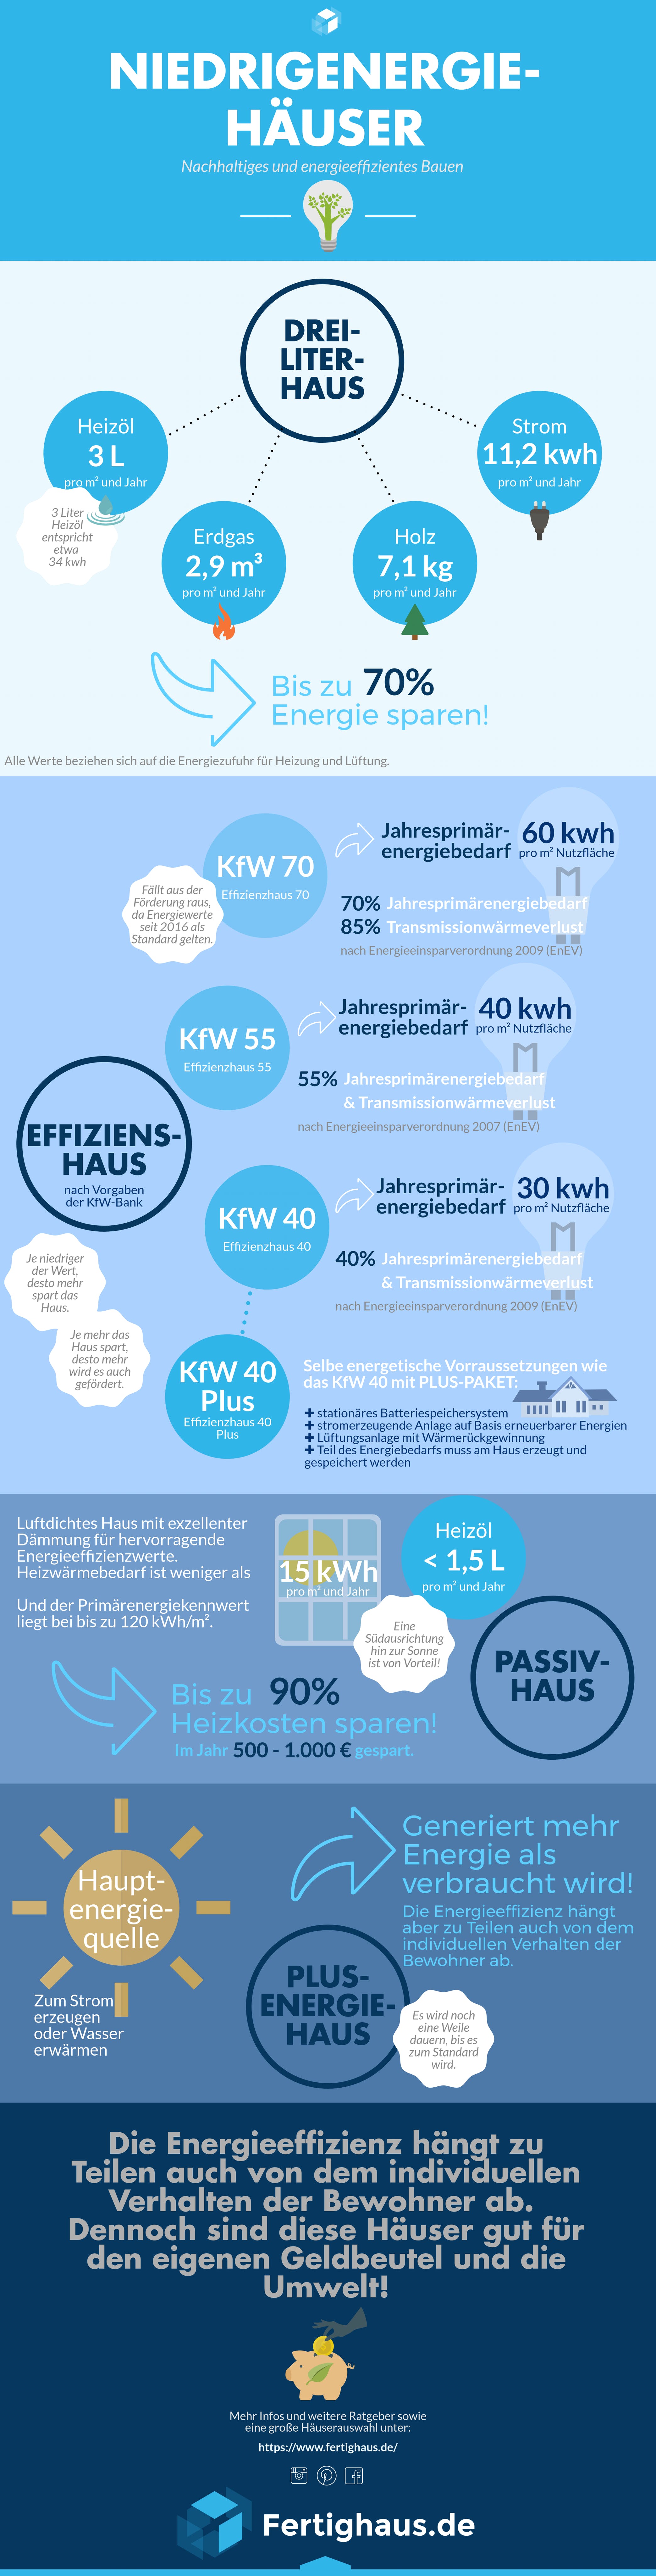 Infografik mit allen Energiestandards für energieeffiziente Häuser